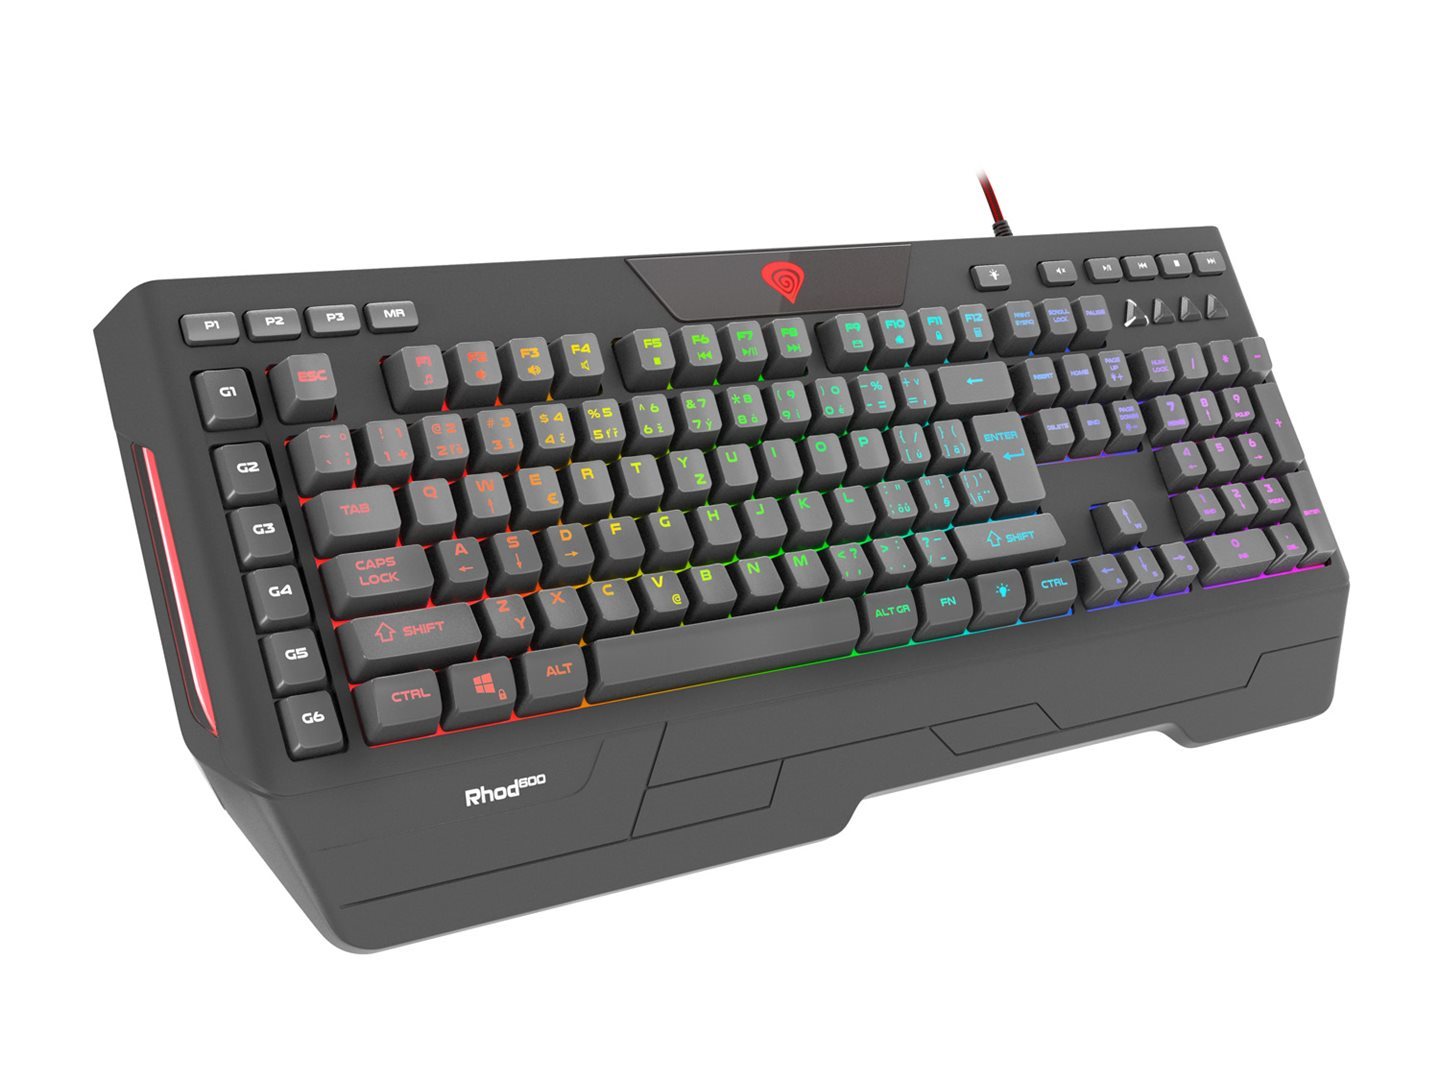 Herní programovatelná klávesnice Genesis Rhod 600 RGB, CZ/SK layout, RGB podsvícení, software